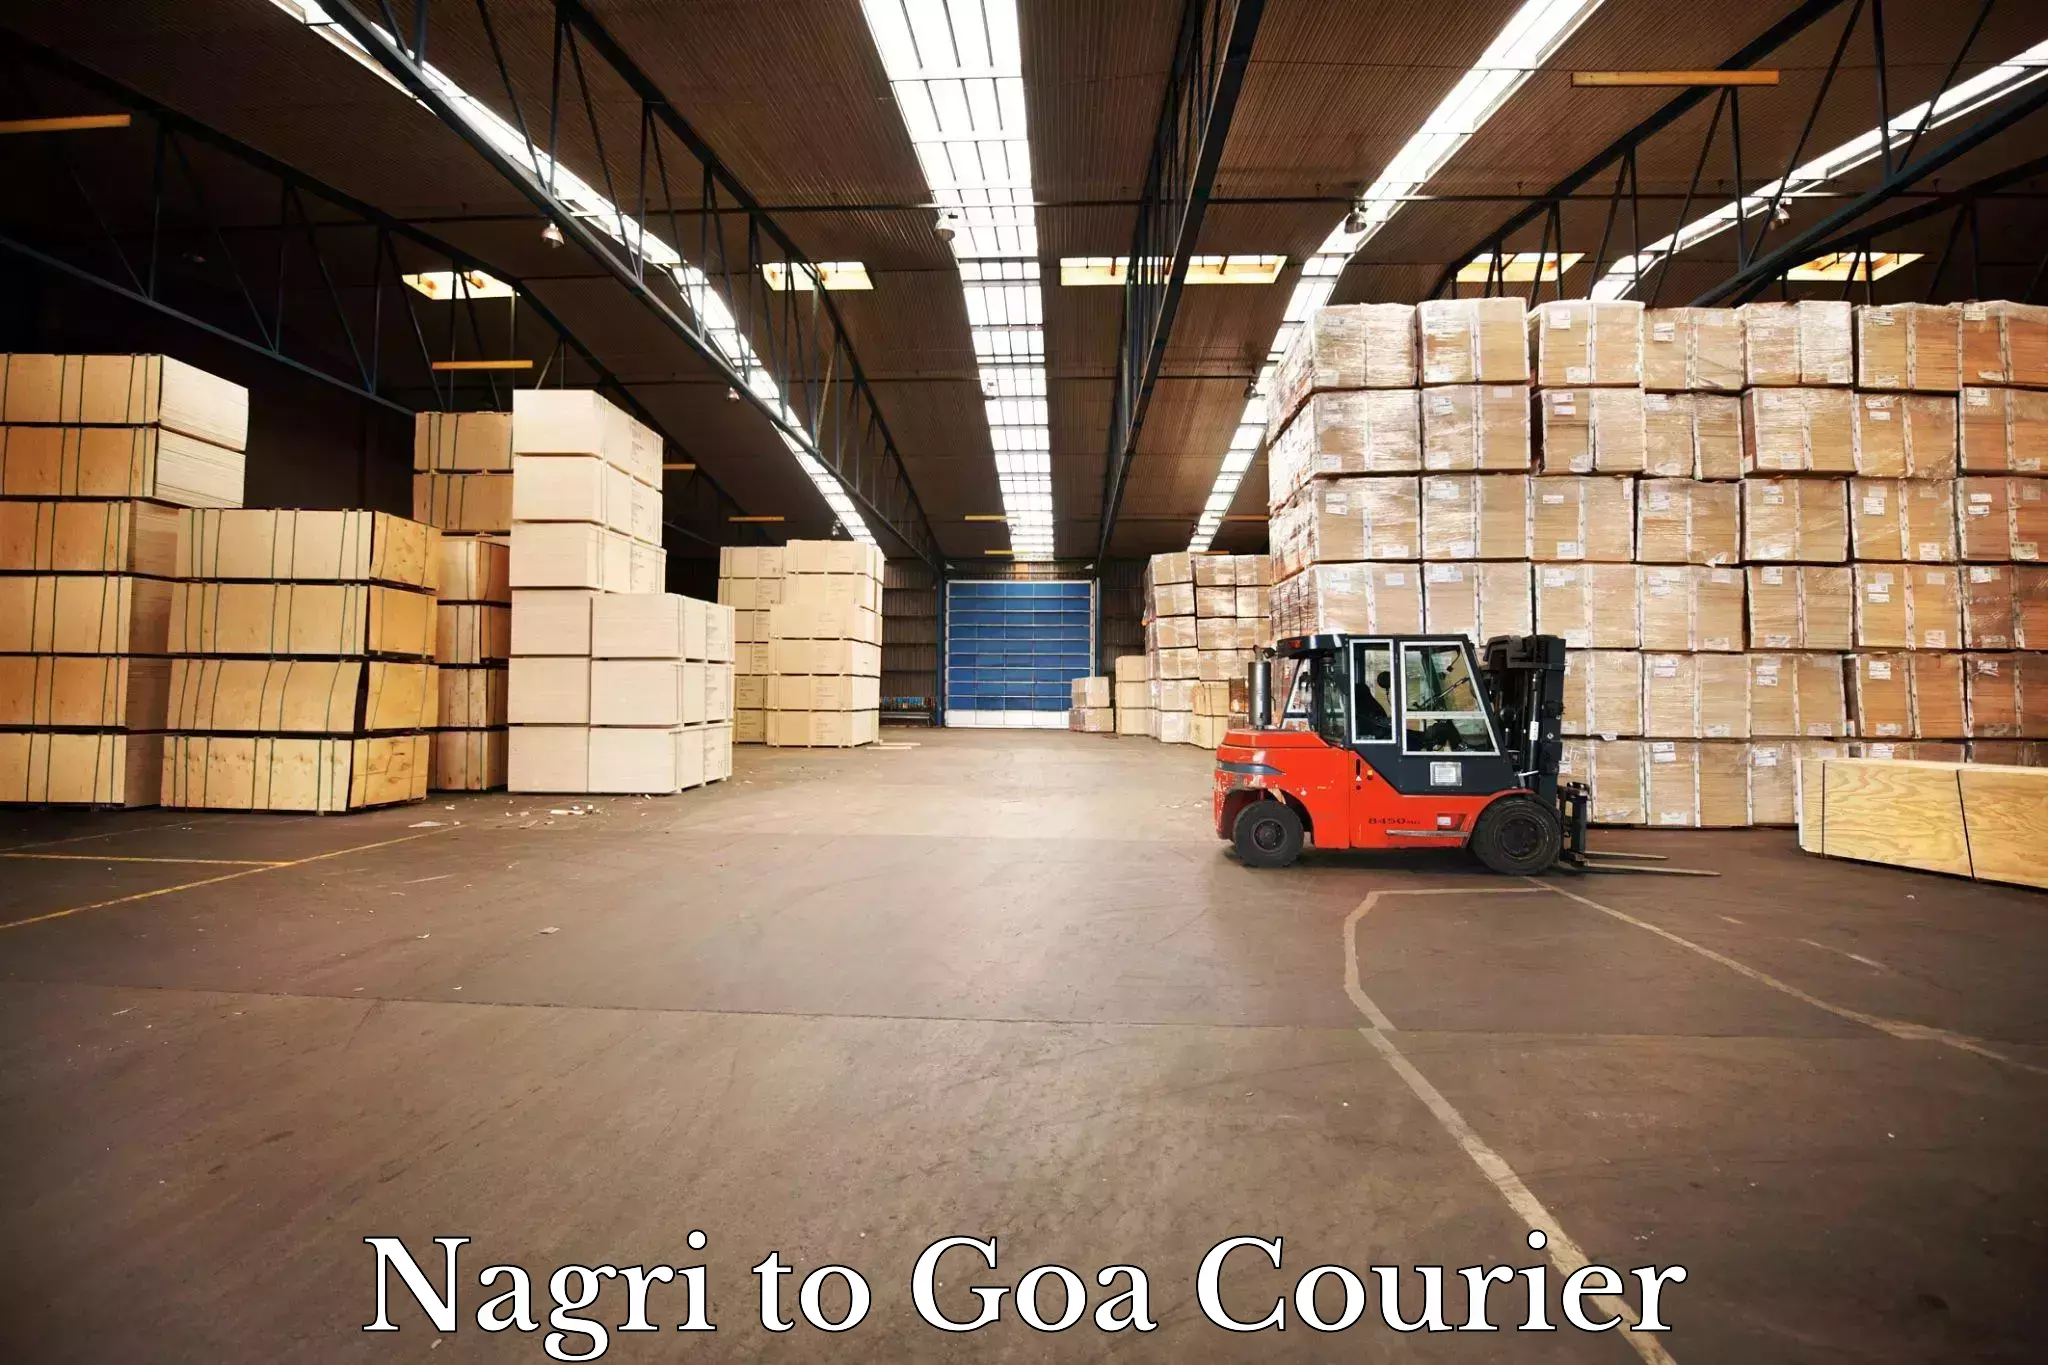 24/7 courier service Nagri to Ponda